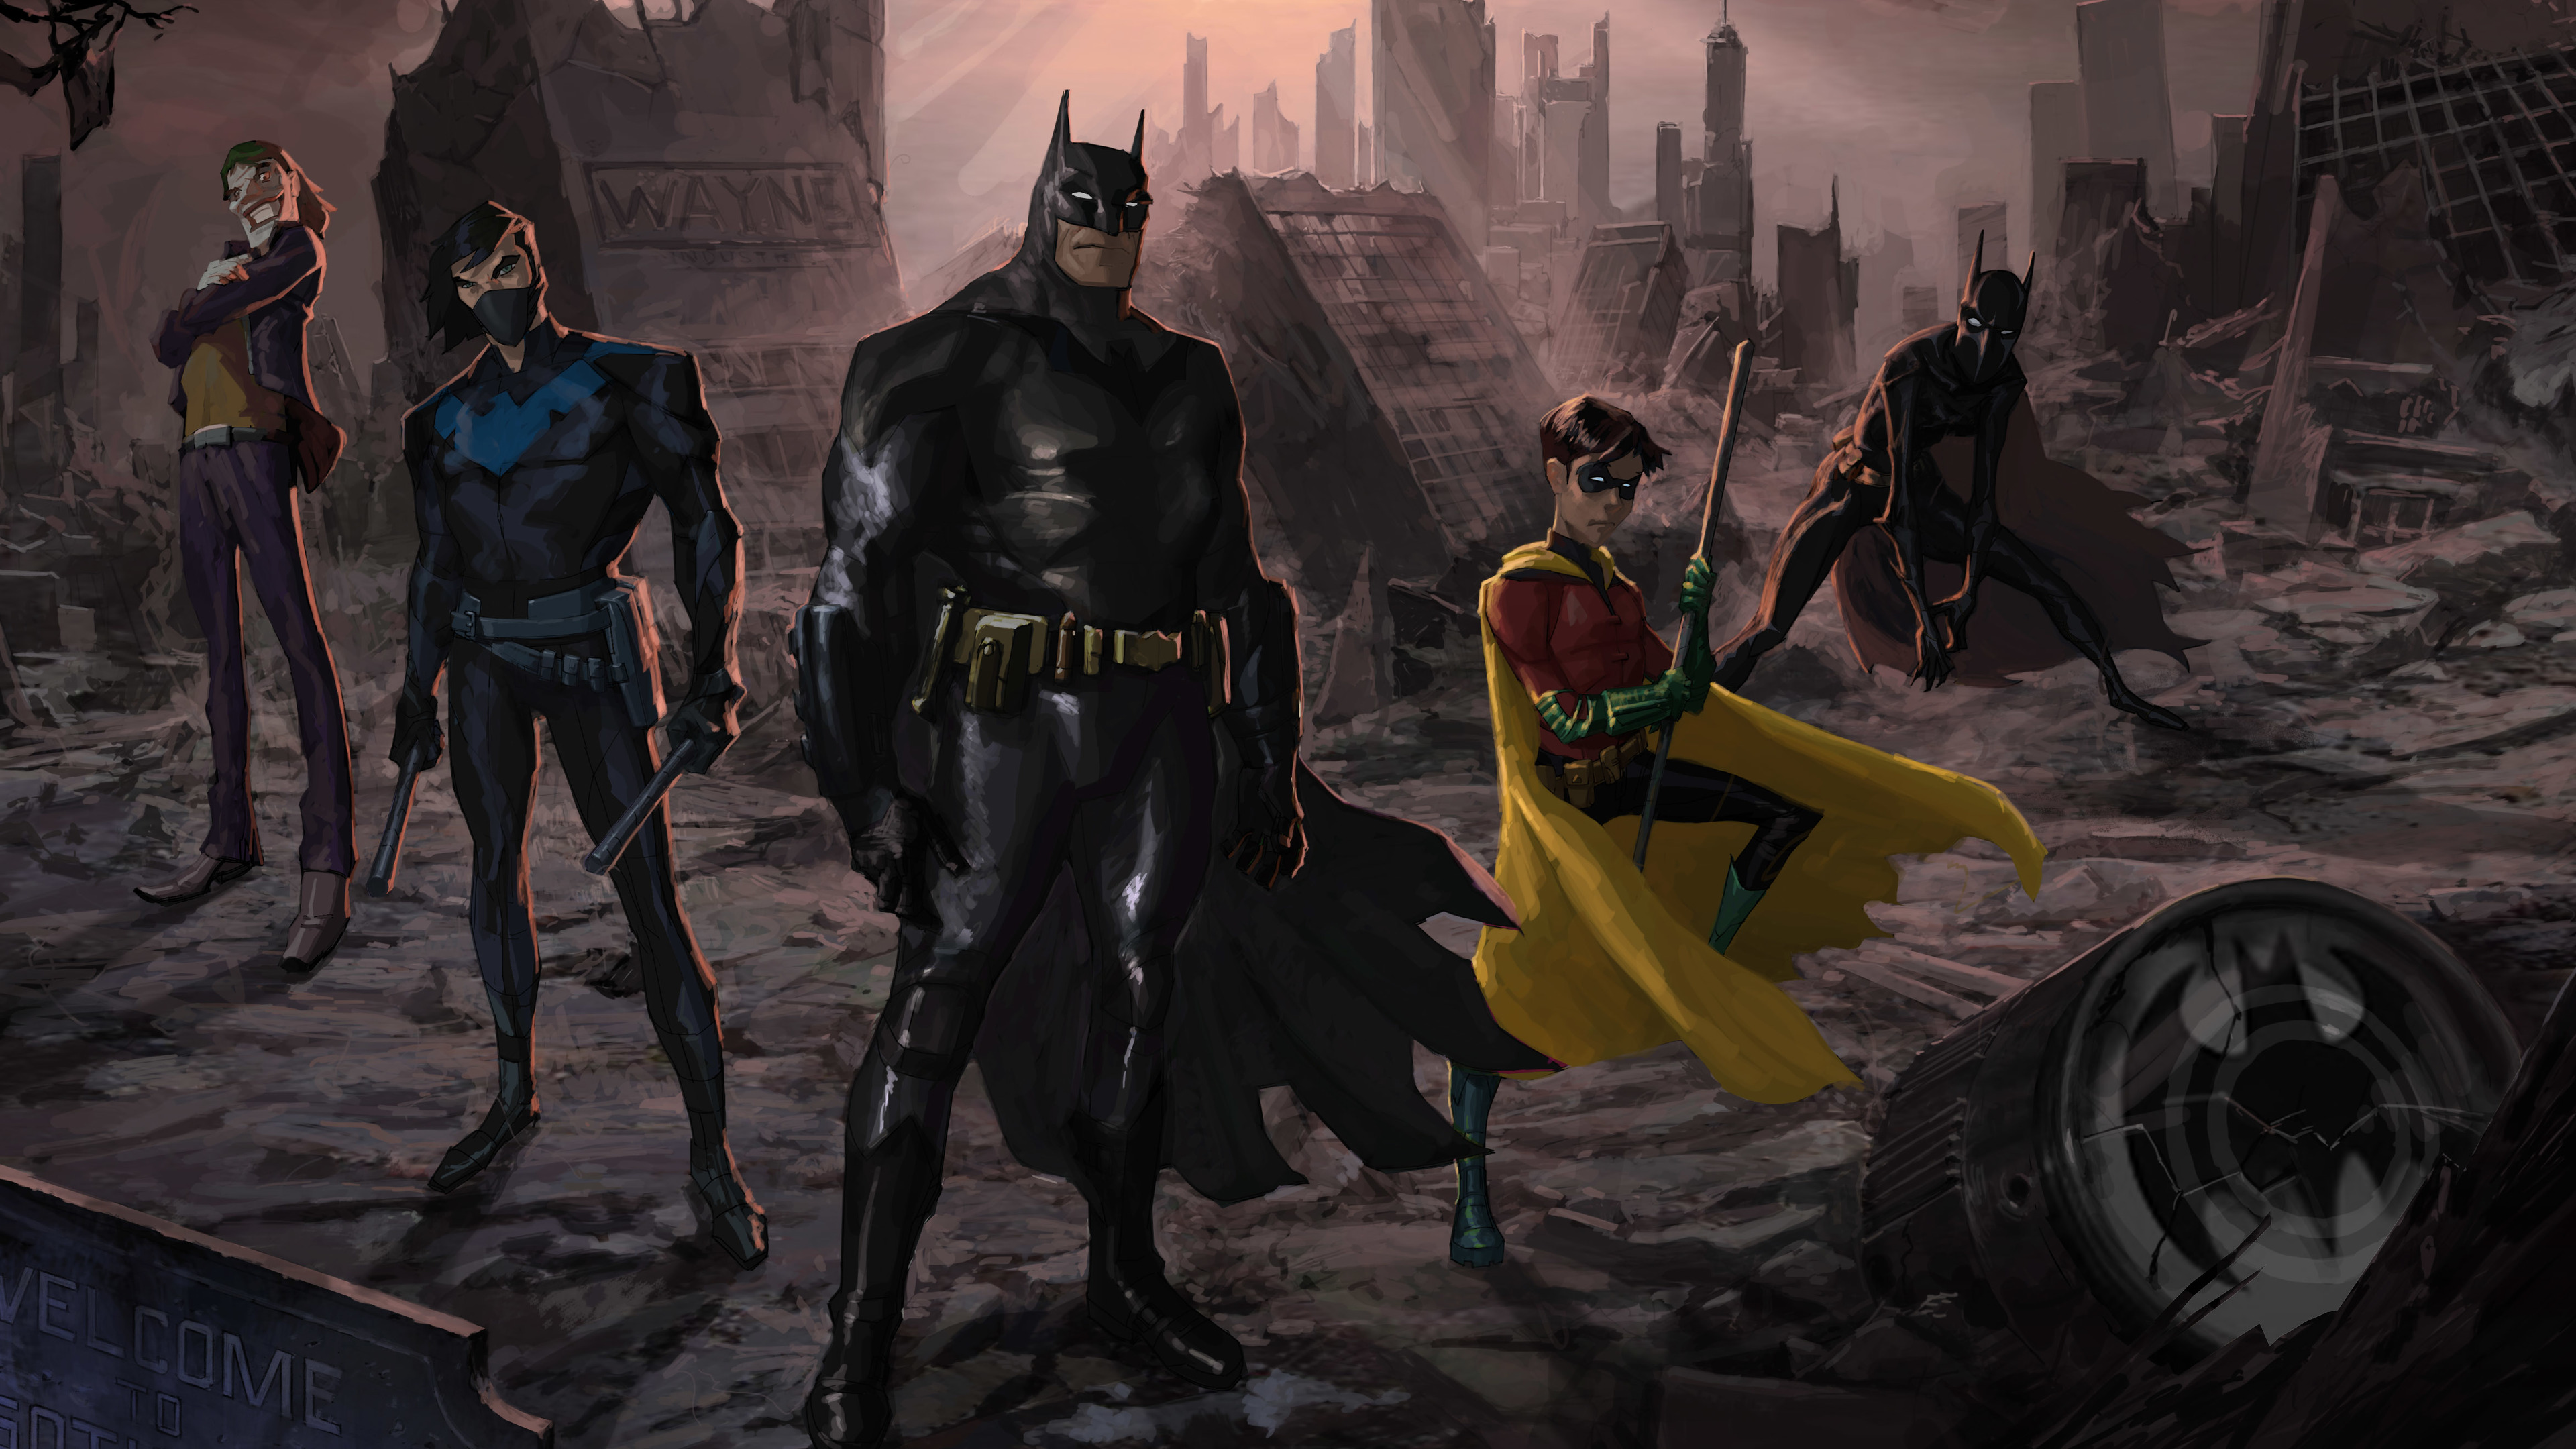 Batman And His Team Artwork - Batman No Man's Land Cartoon - HD Wallpaper 